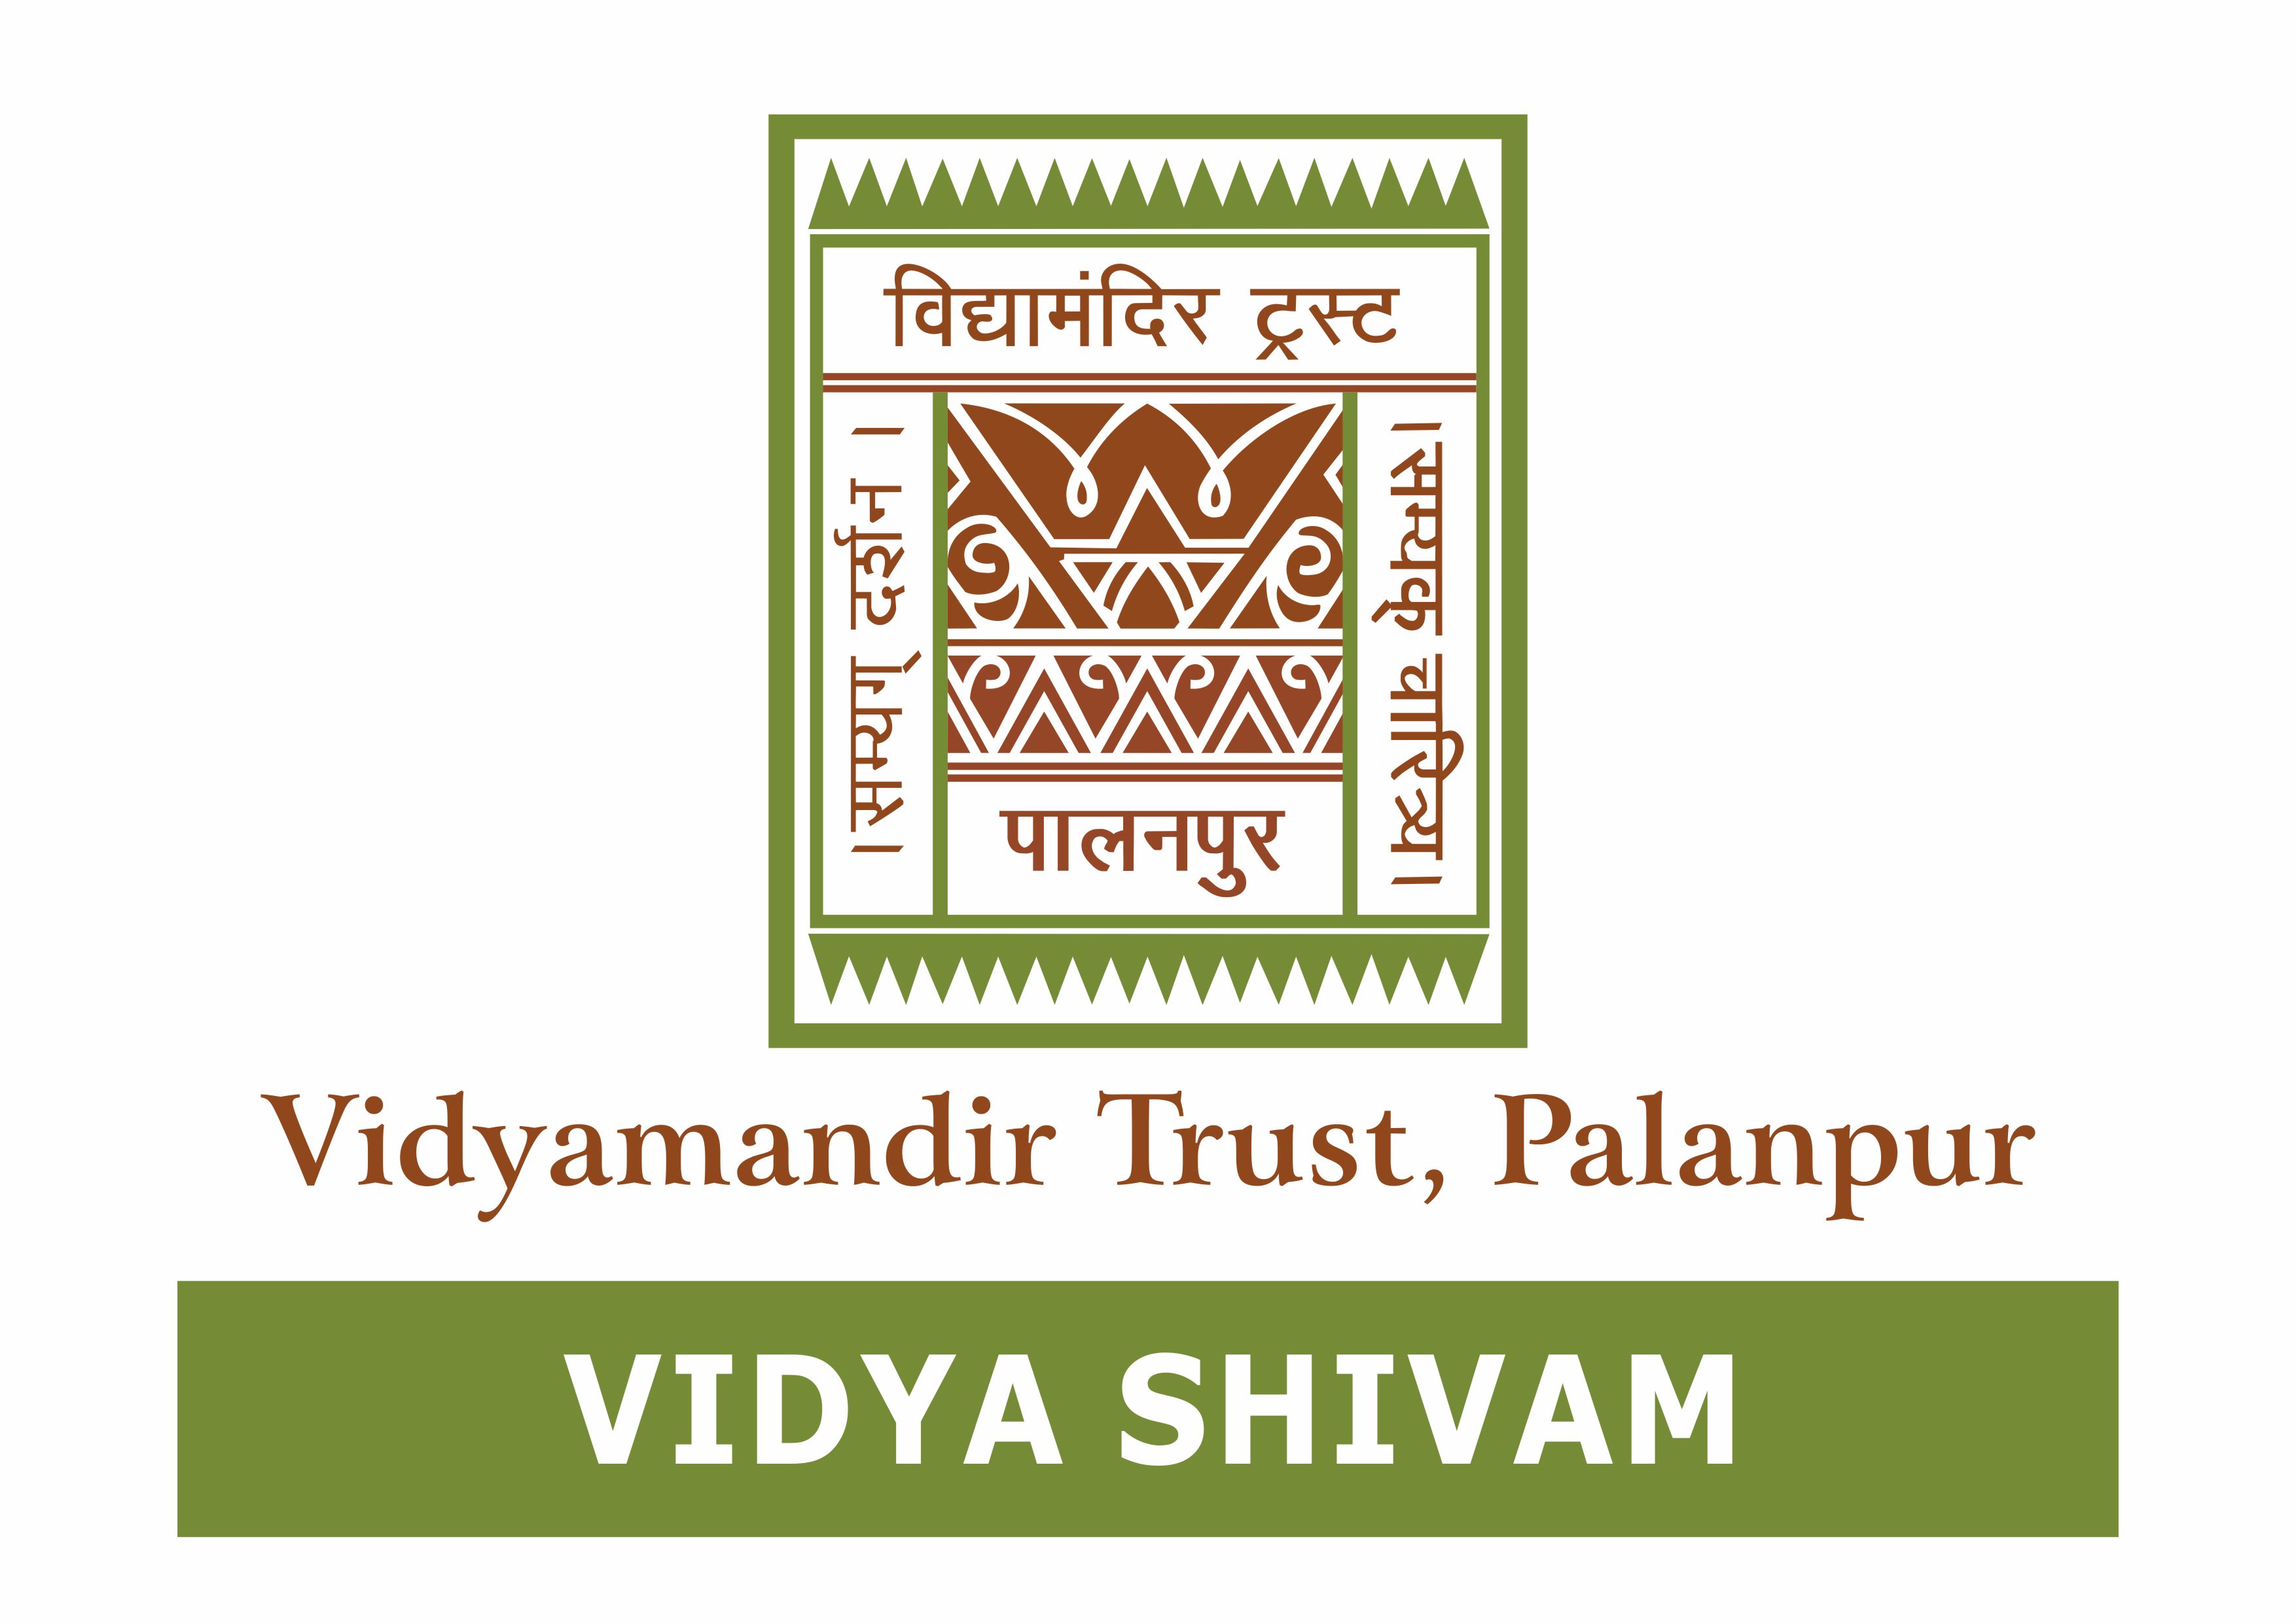 Vidya Shivam - Vidyamandir Trust, Palanpur